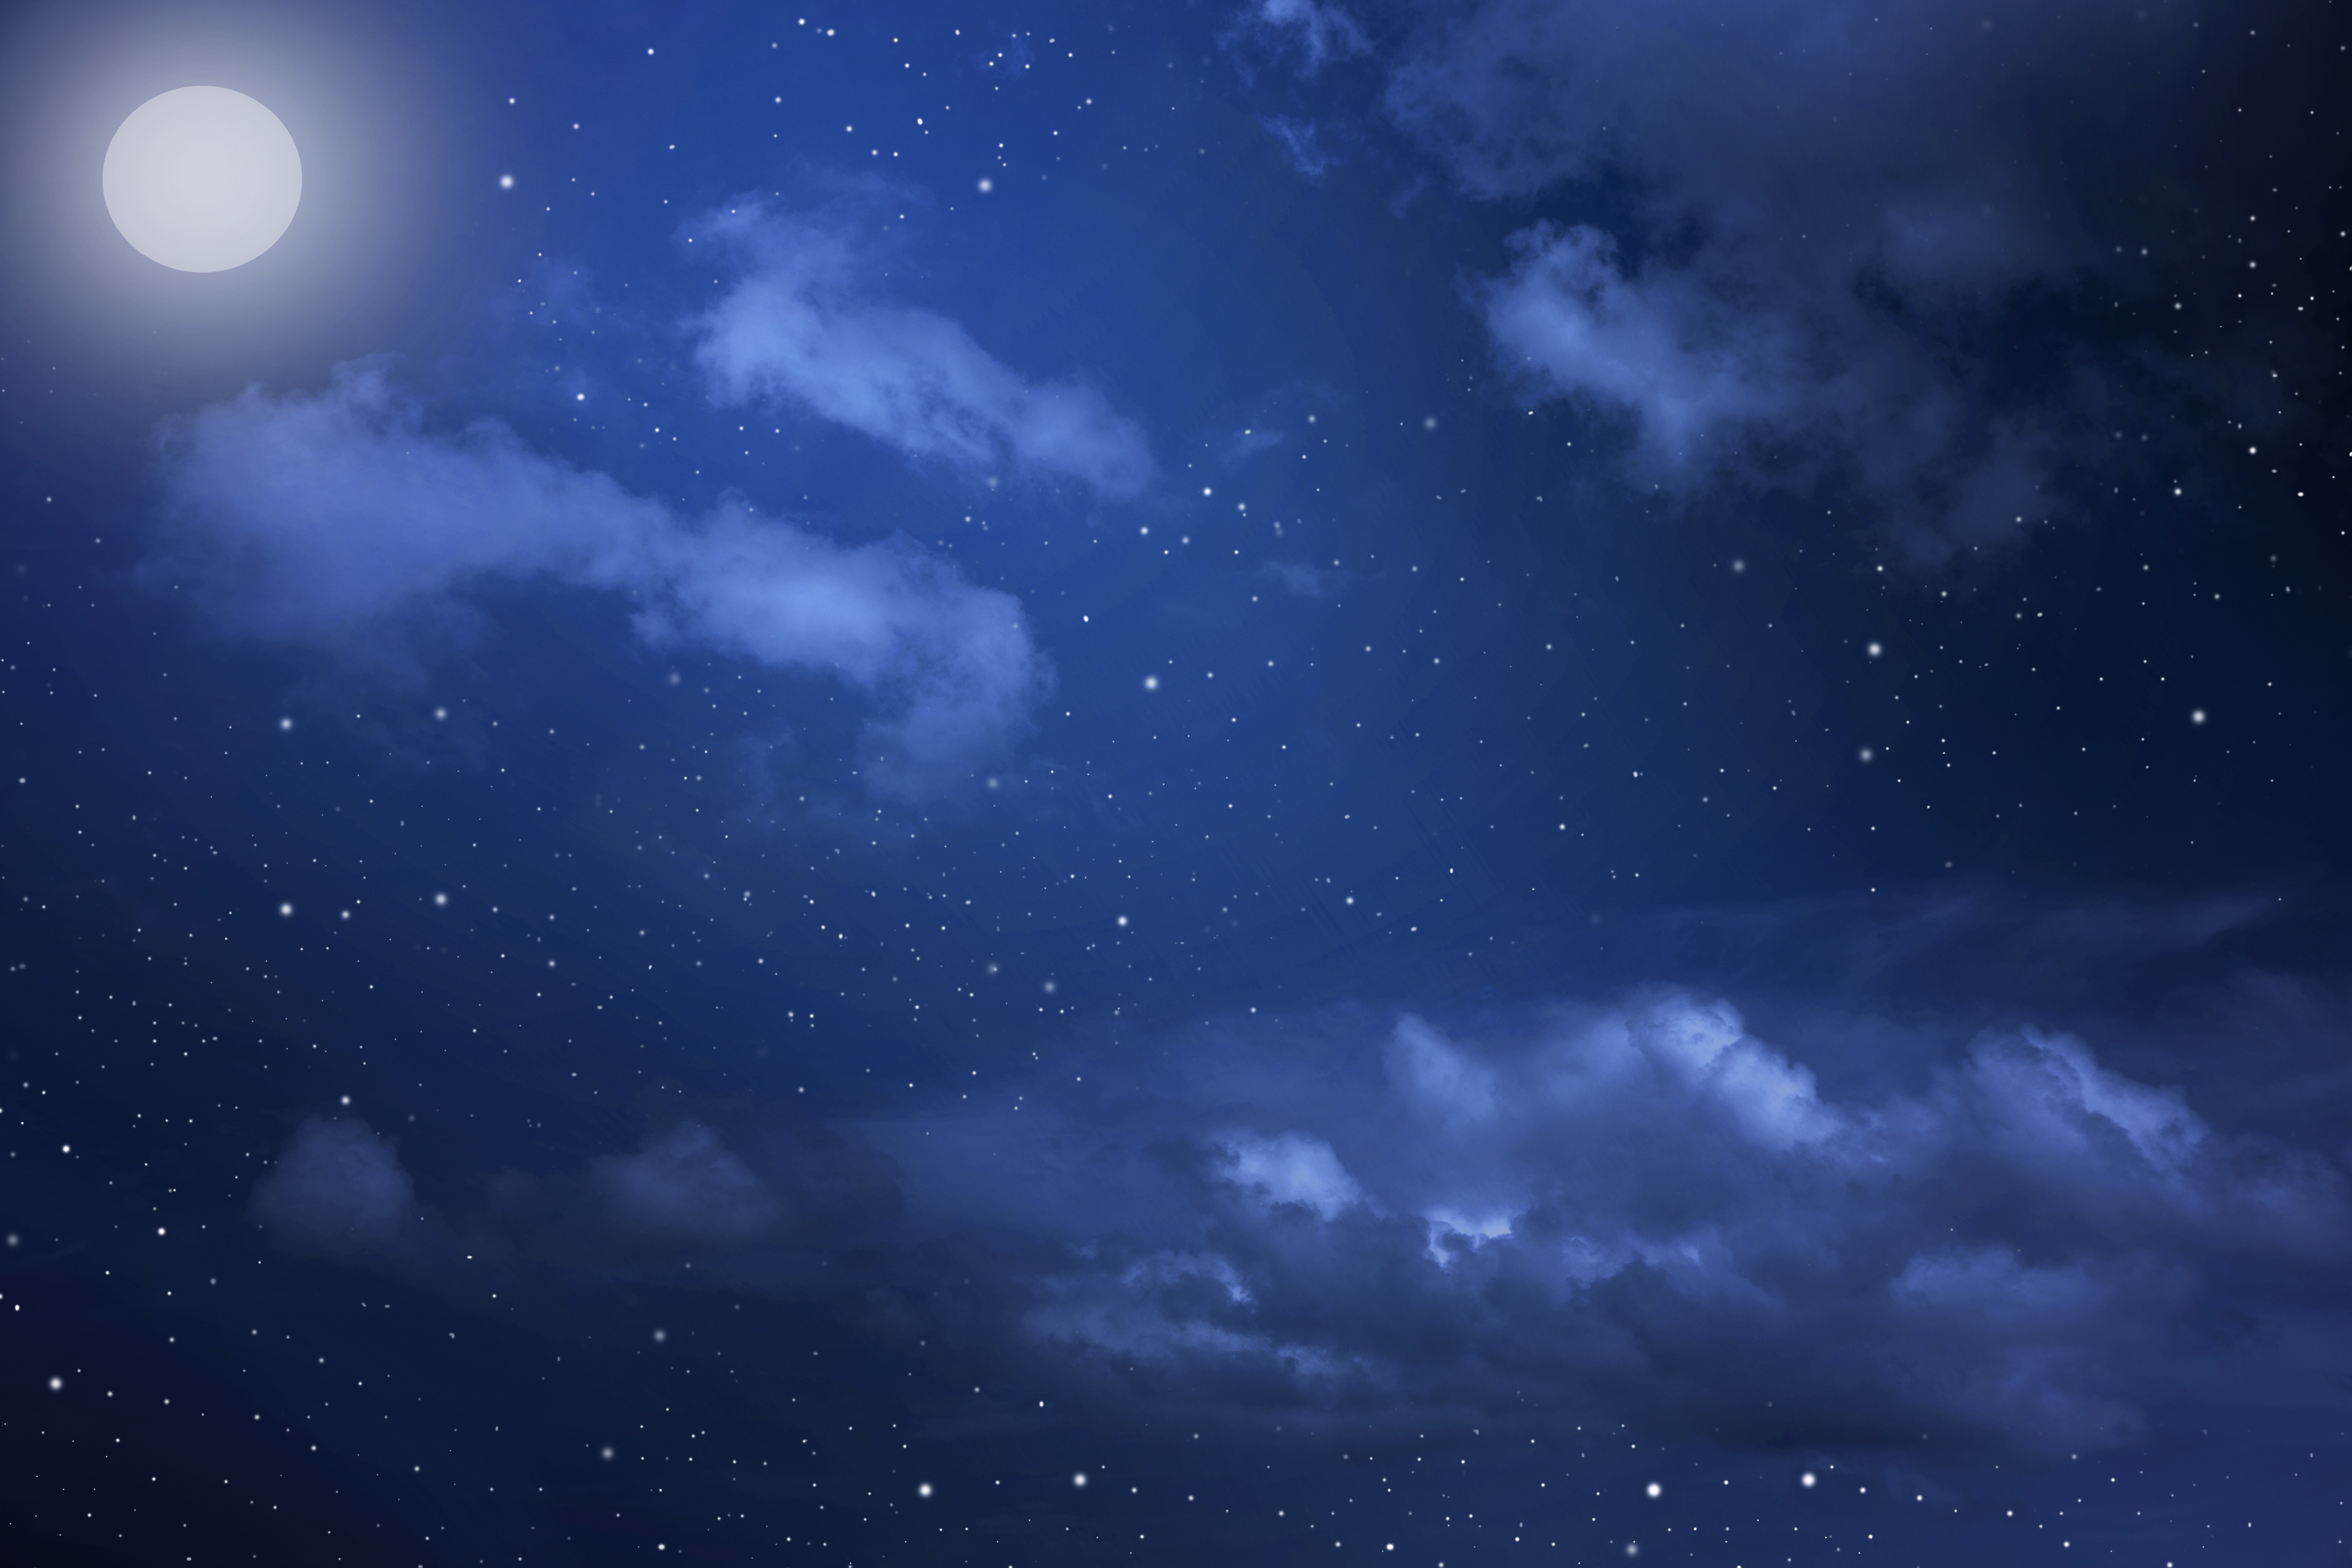 Hình nền đêm trăng: Tận hưởng cảm giác yên bình trong suốt cả buổi đêm, với hình nền đẹp và giản đơn của bầu trăng ngoài cửa sổ nhà bạn. Không chỉ tạo giấc ngủ ngon hơn, hình nền đêm trăng còn giúp bạn tâm tình thư thái và bình yên.